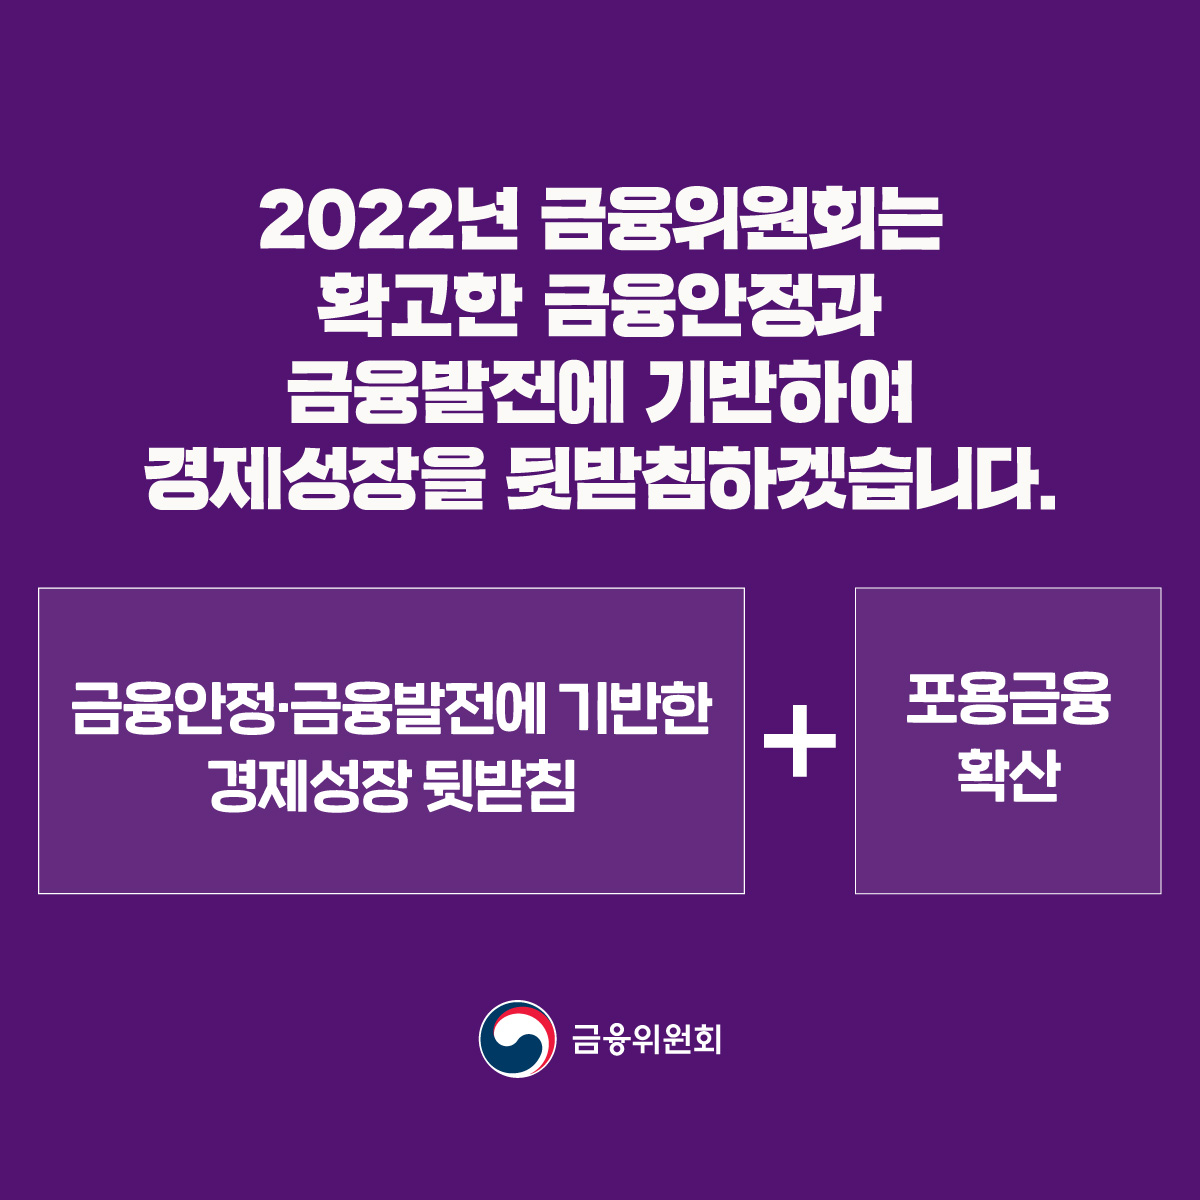 [2022년 금융위원회 업무계획 ②]  금융역동성을 제고하고 금융발전을 유도하겠습니다